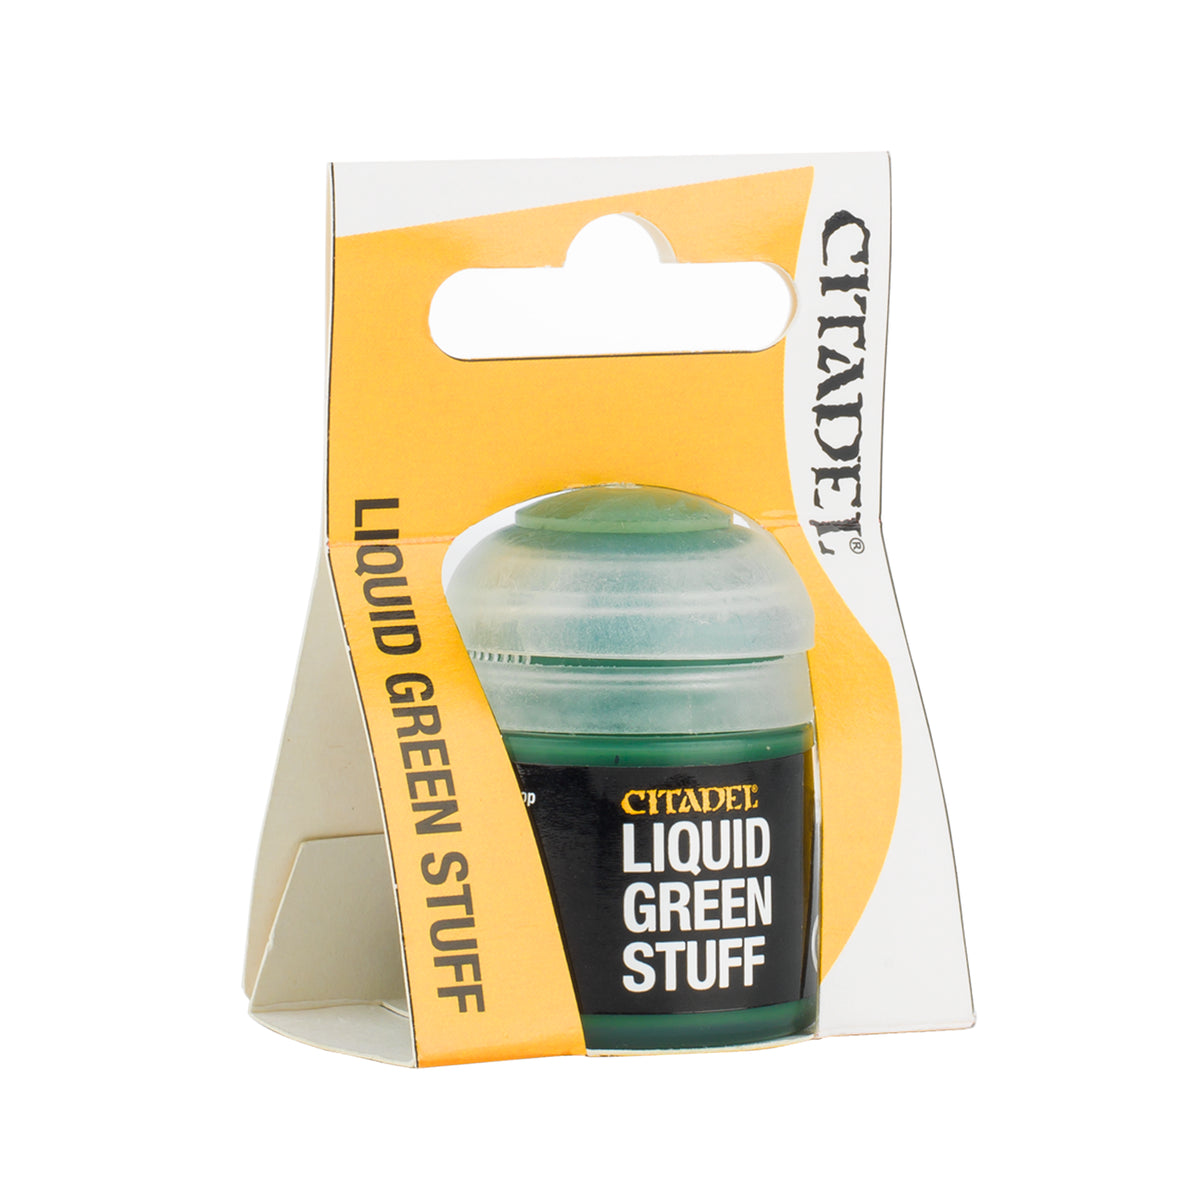 Liquid Green Stuff - Citadel Technical